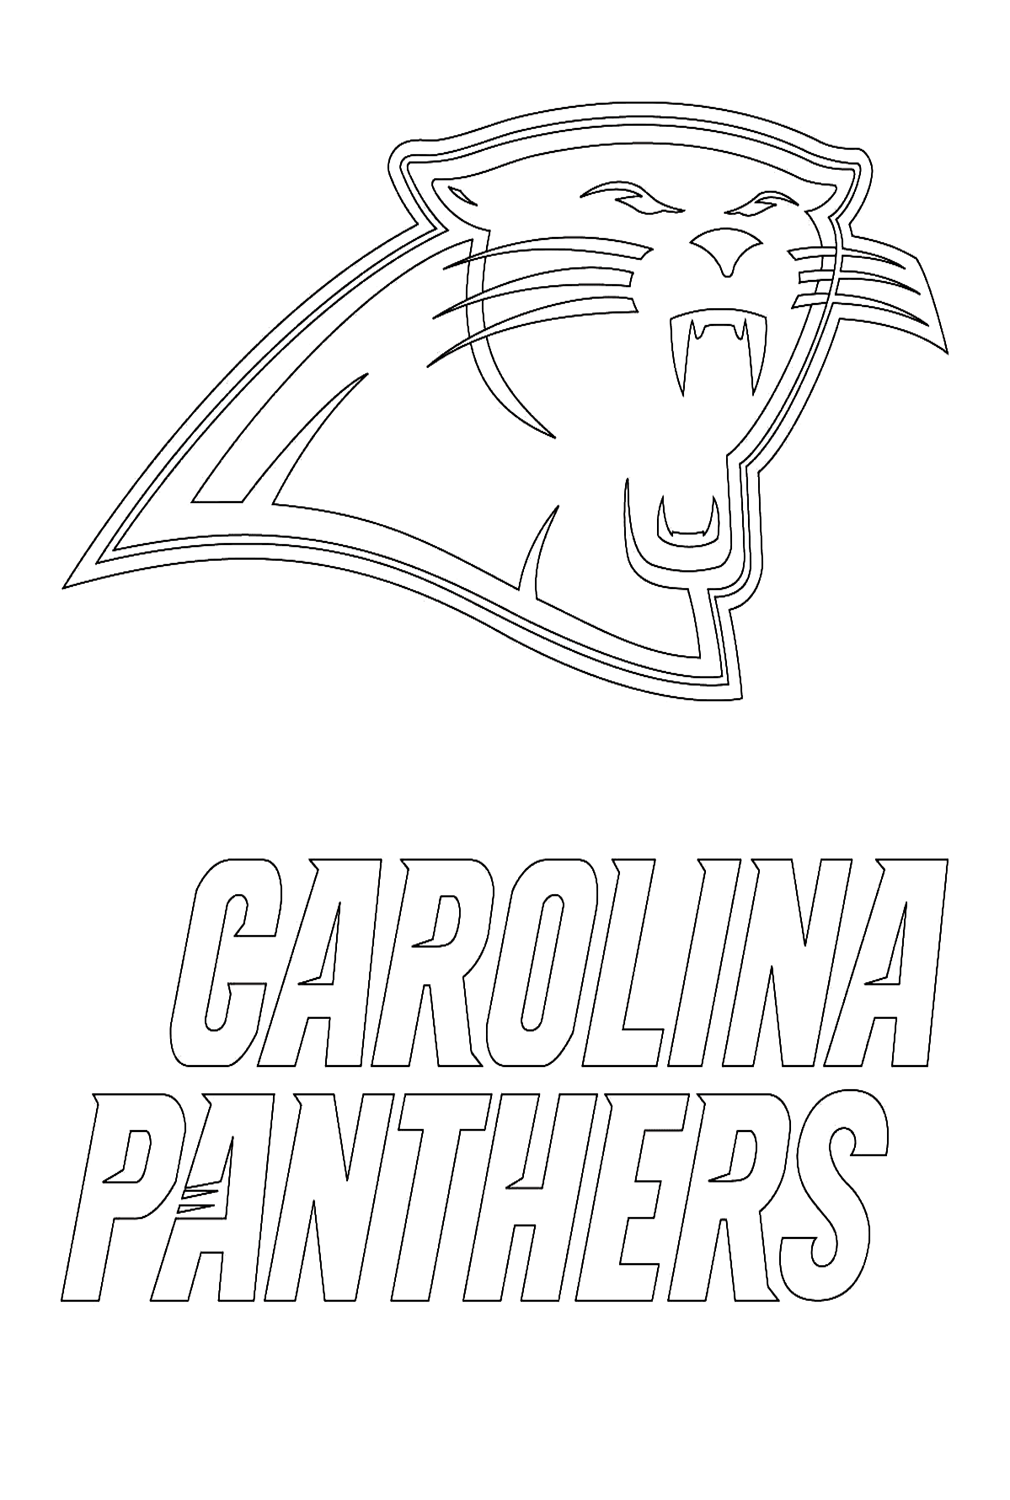 Логотип Каролины Пантерс из НФЛ